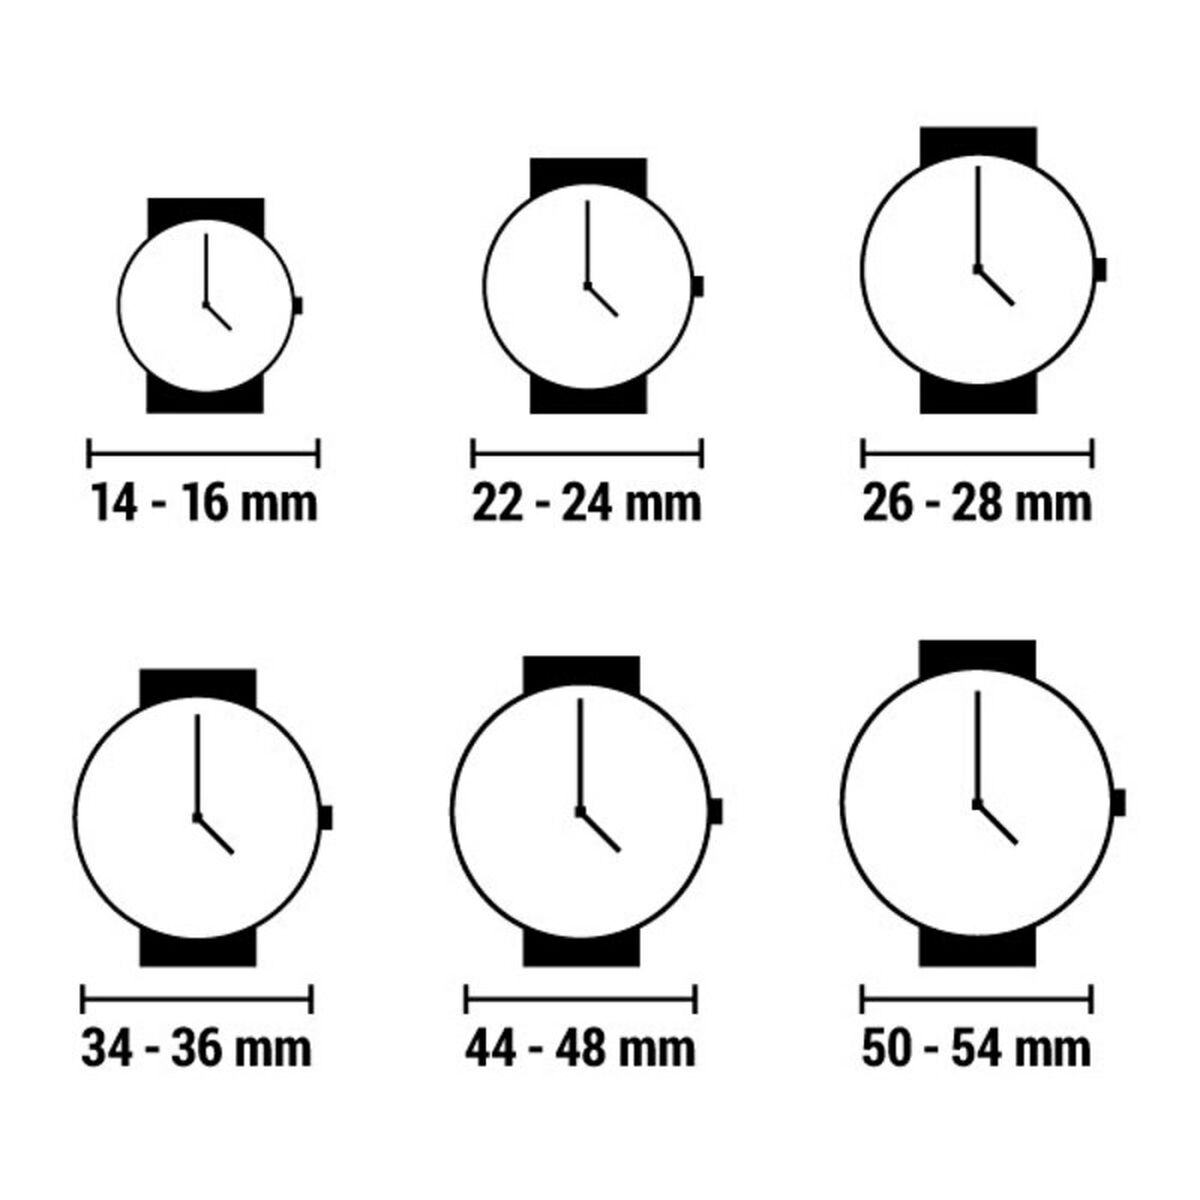 Horloge Heren Laura Biagiotti LB0031M-02 (Ø 47 mm)